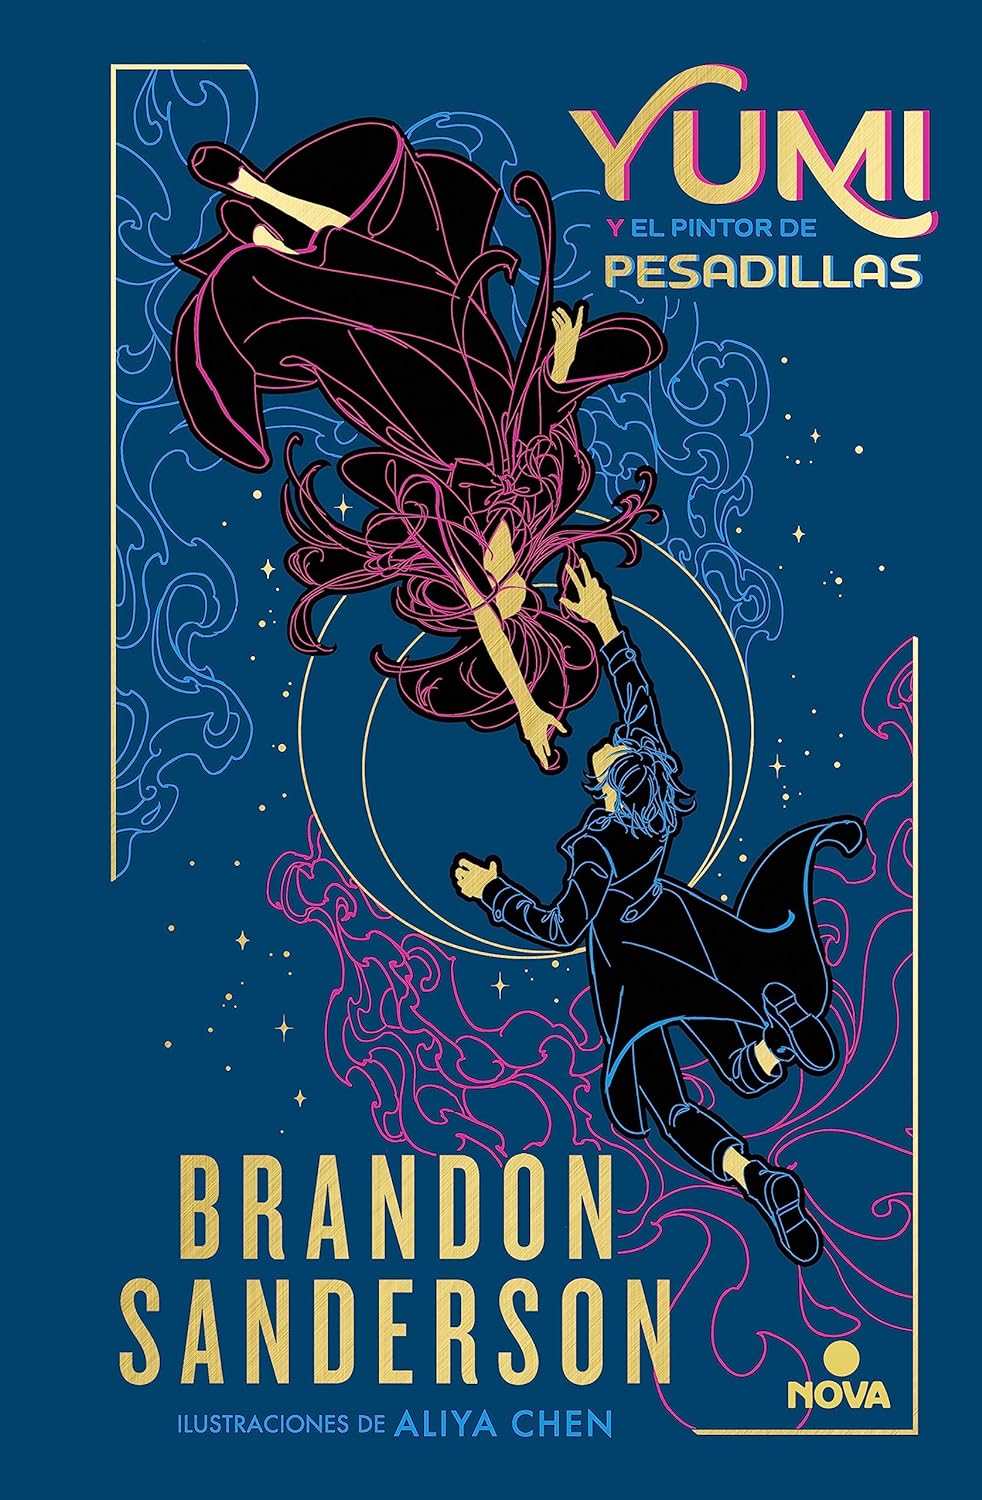 Brandon Sanderson, Manu Viciano: Yumi y el pintor de pesadillas (Hardcover, Español language, 2023, Nova, Penguin Random House)